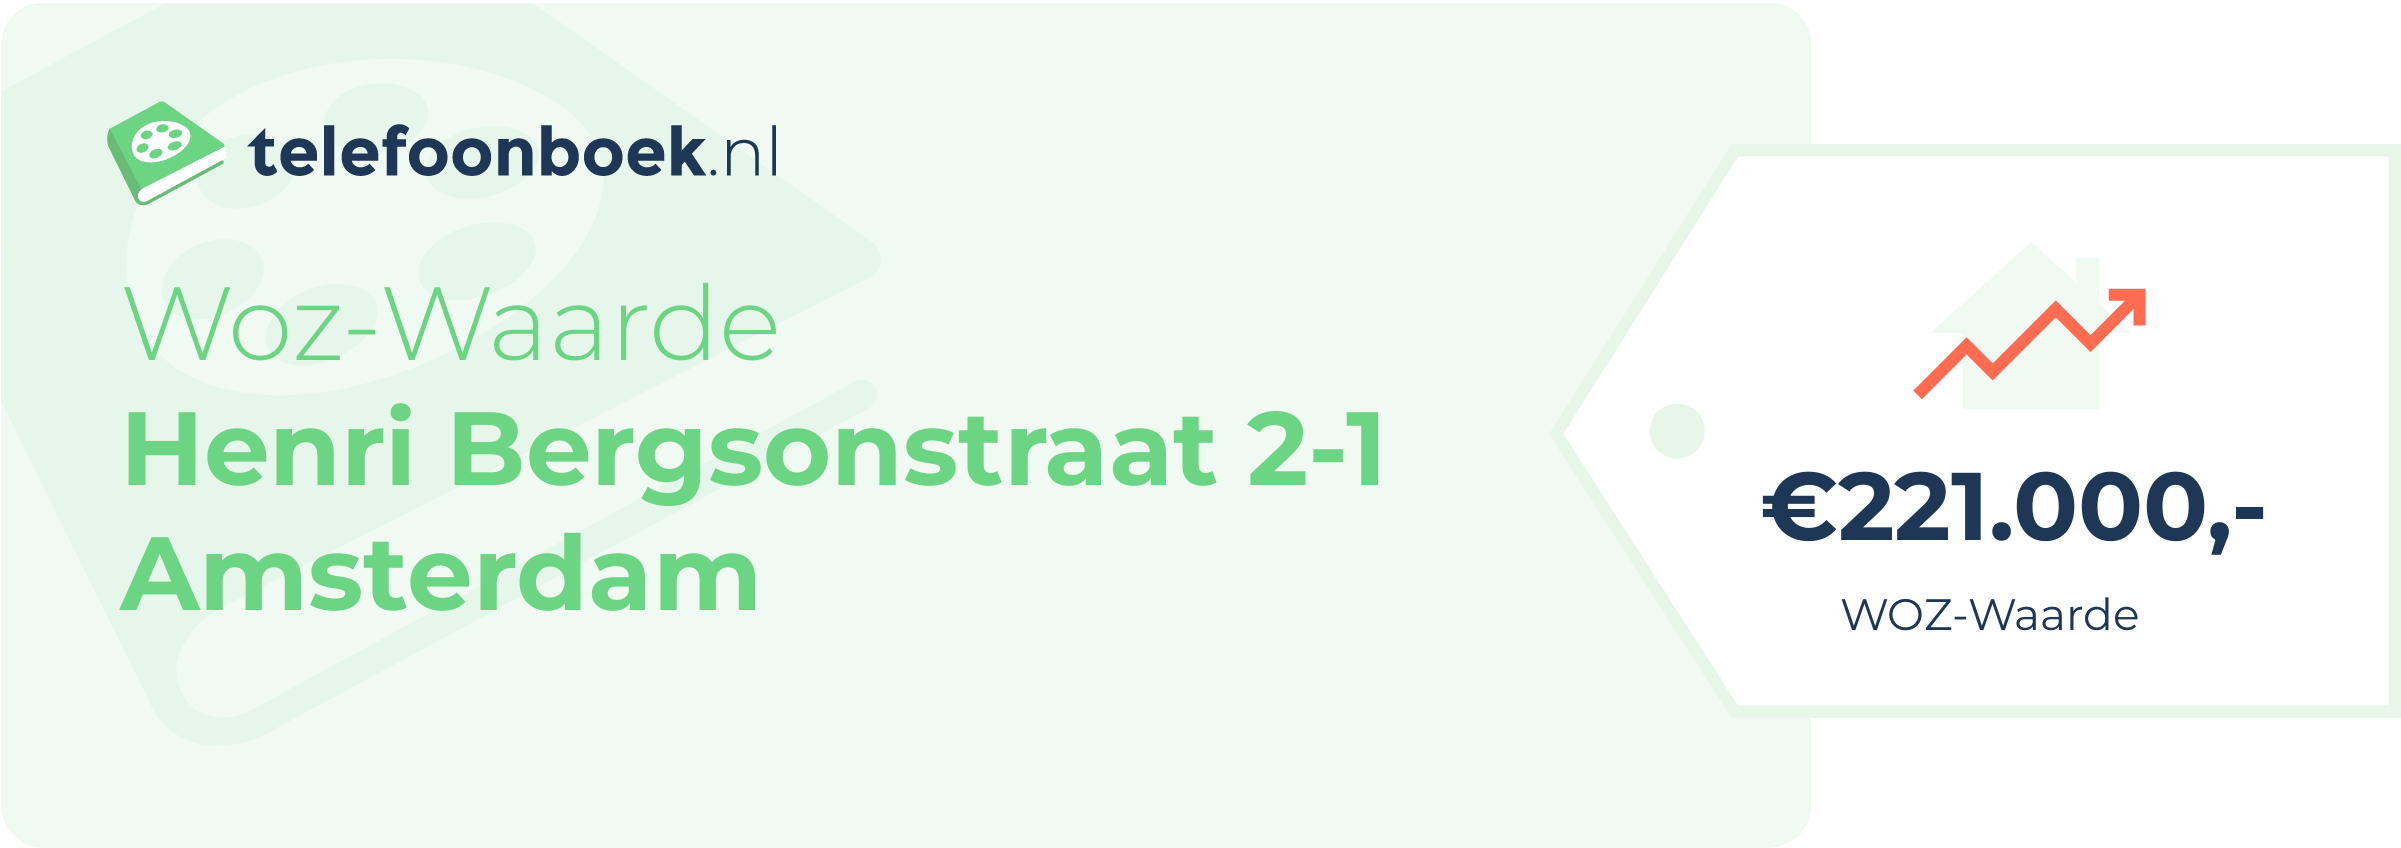 WOZ-waarde Henri Bergsonstraat 2-1 Amsterdam